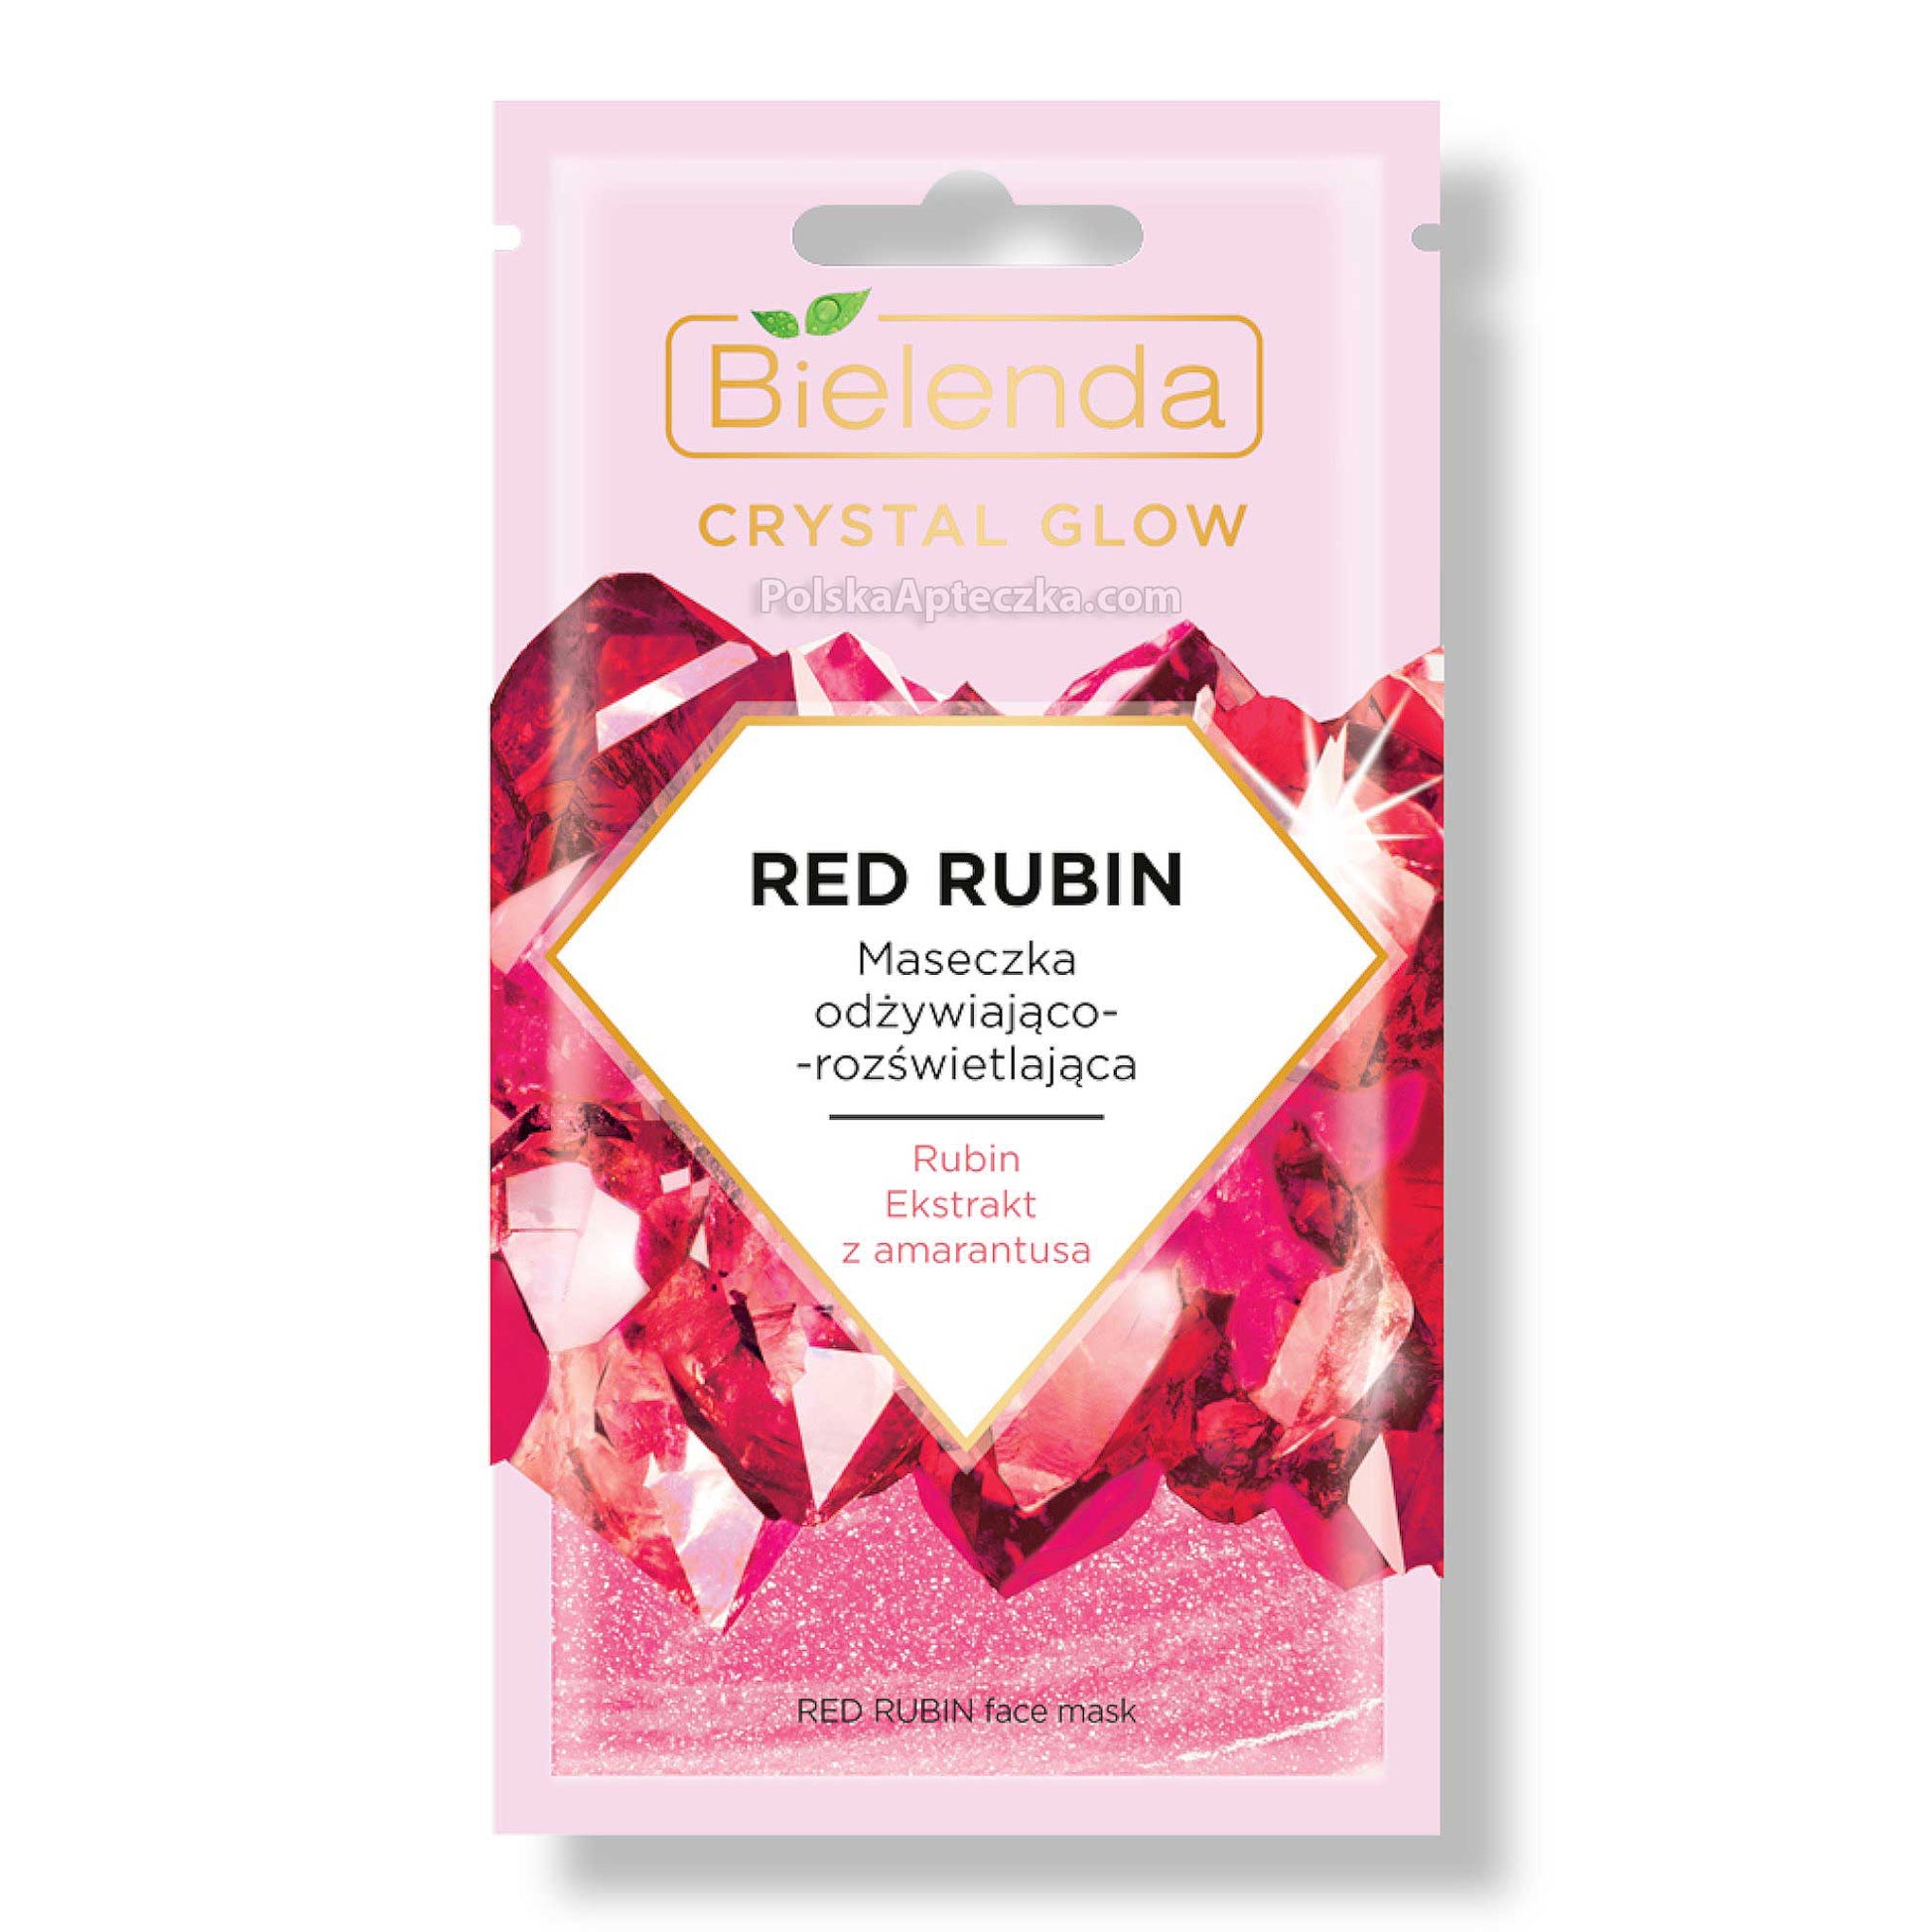 Bielenda, Crystal Glow, Red Rubin maseczka odżywiająco-rozświetlająca 8 g